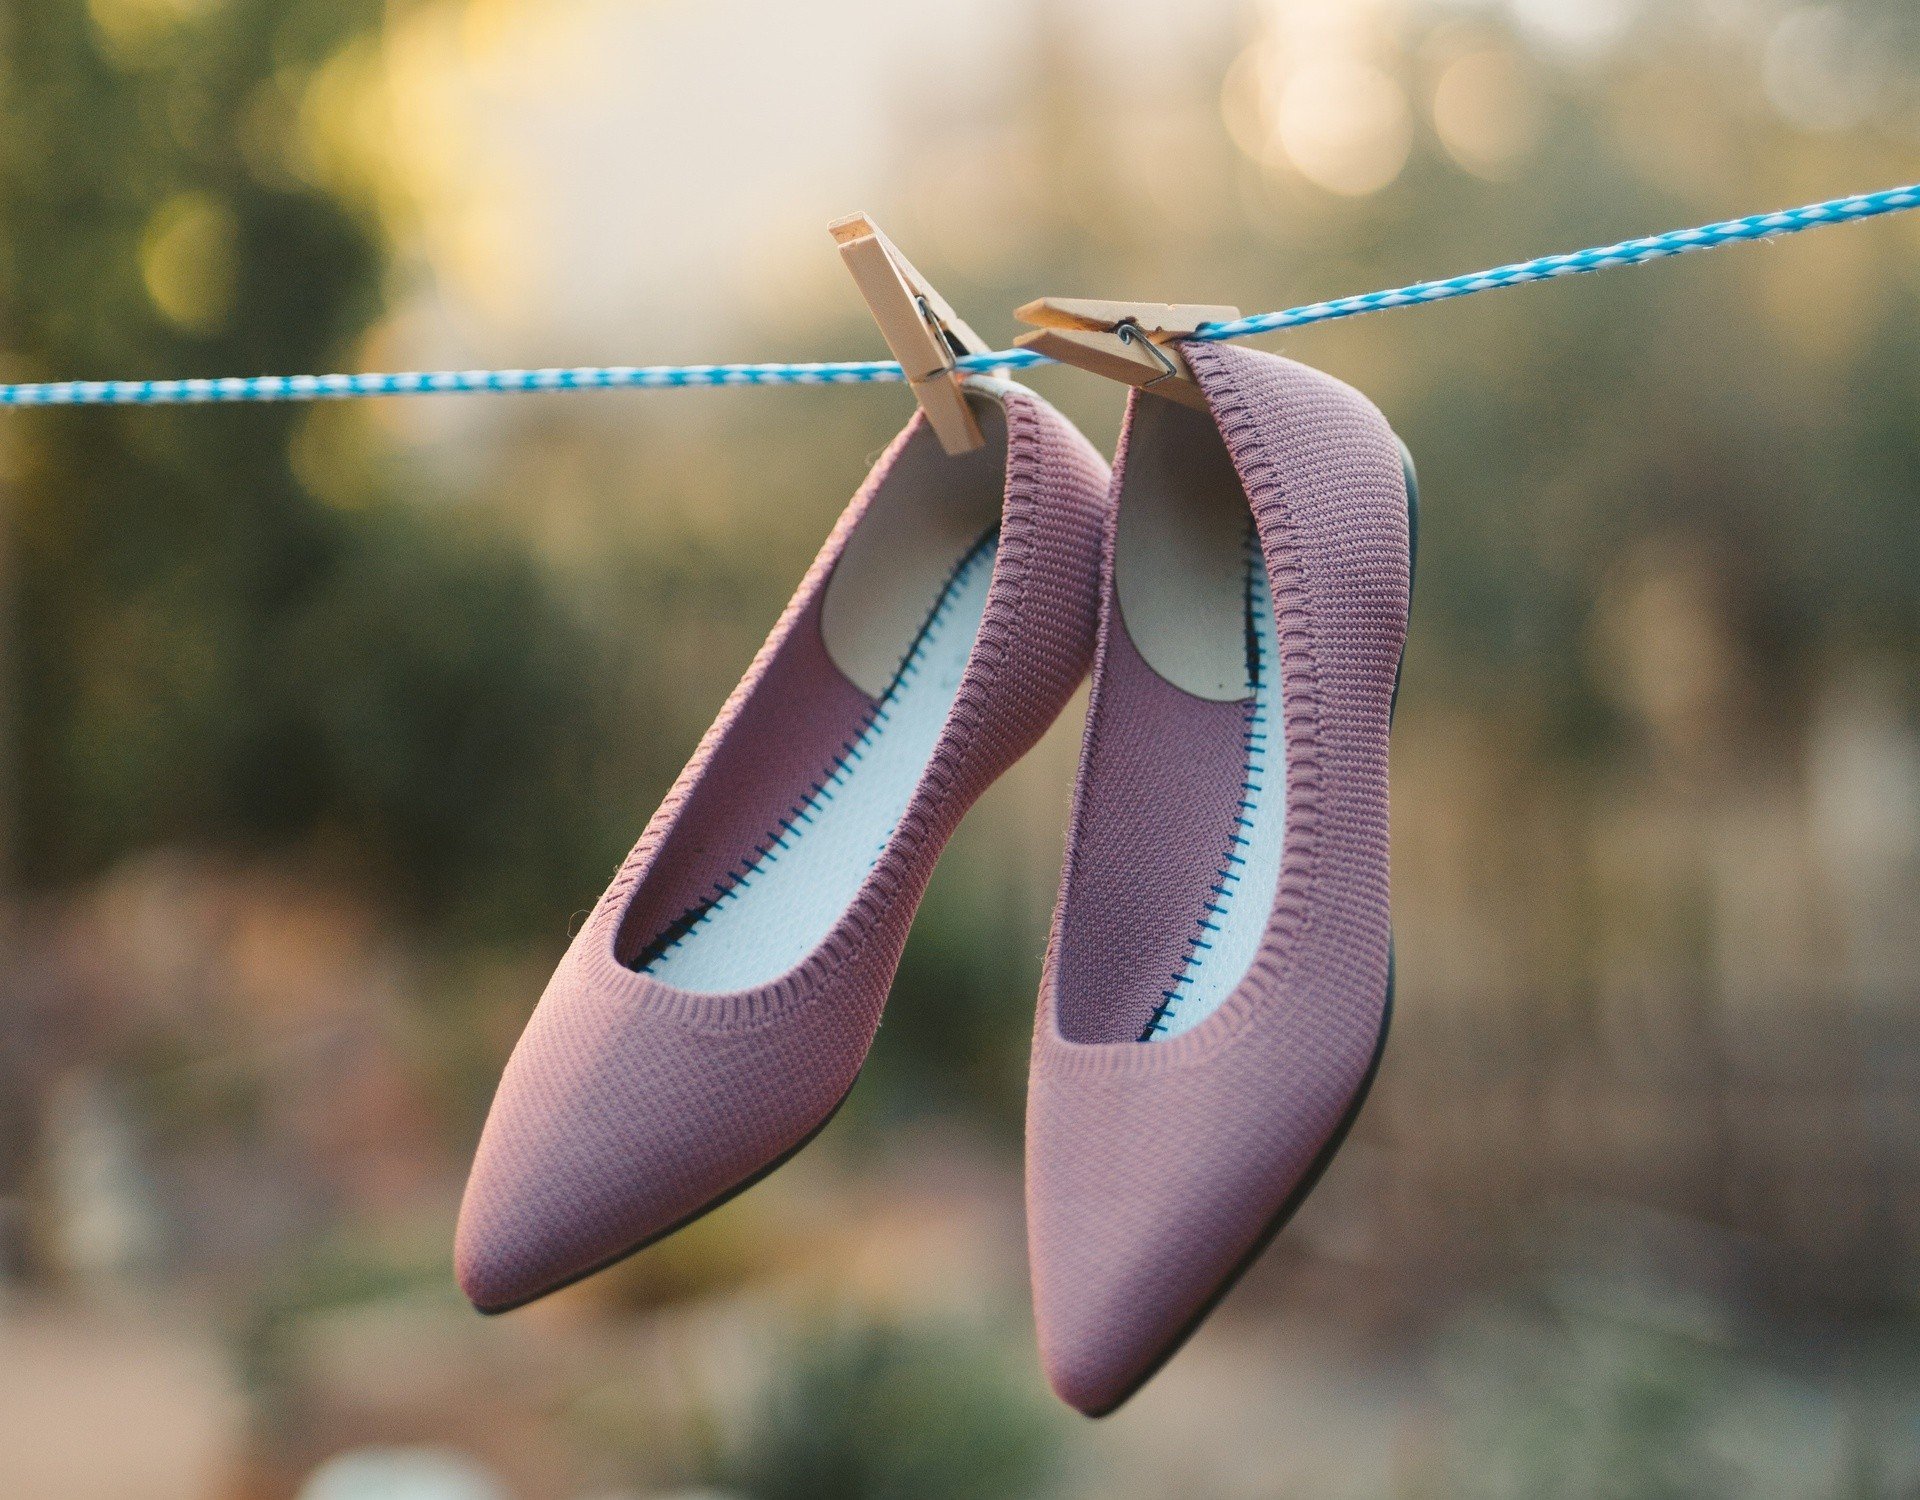 Jak suszyć buty po praniu? Poznaj triki na szybkie i bezpieczne wysuszenie  obuwia. Zobacz, jak uniknąć paskudnych zacieków i plam | RegioDom